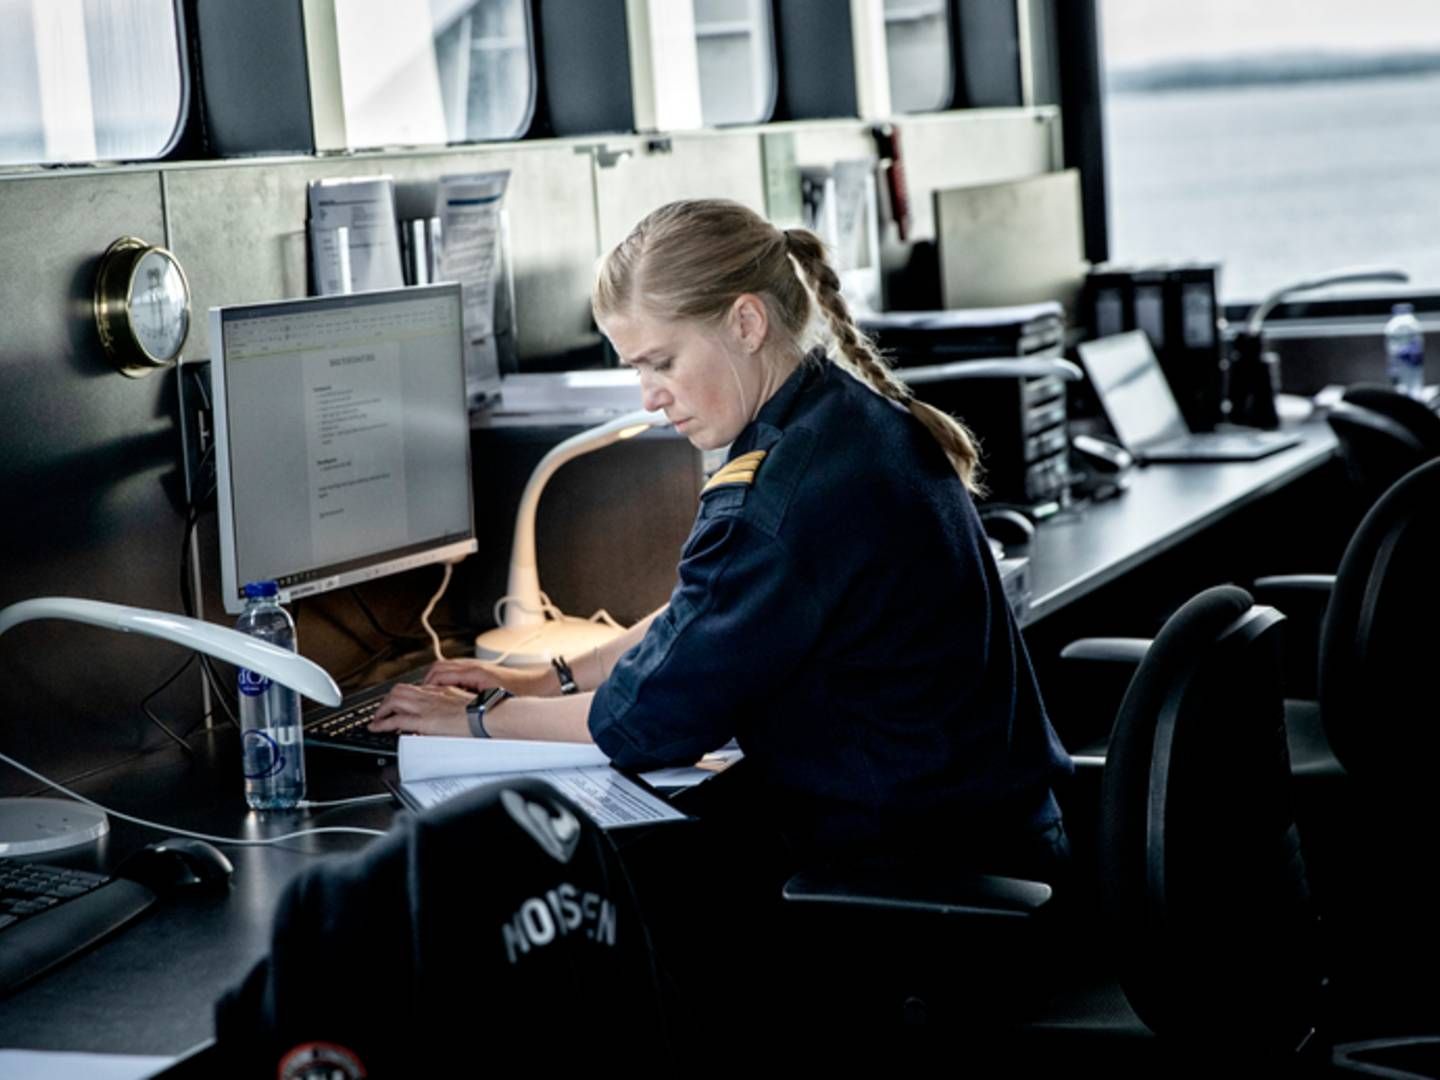 Det er over et år siden, at Danske Rederier lancerede sit charter, der skal sikre flere kvinder i shippingindustrien. 23 rederier har indtil videre underskrevet, men flere har endnu ikke opstillet konkrete mål. | Foto: Danske Rederier